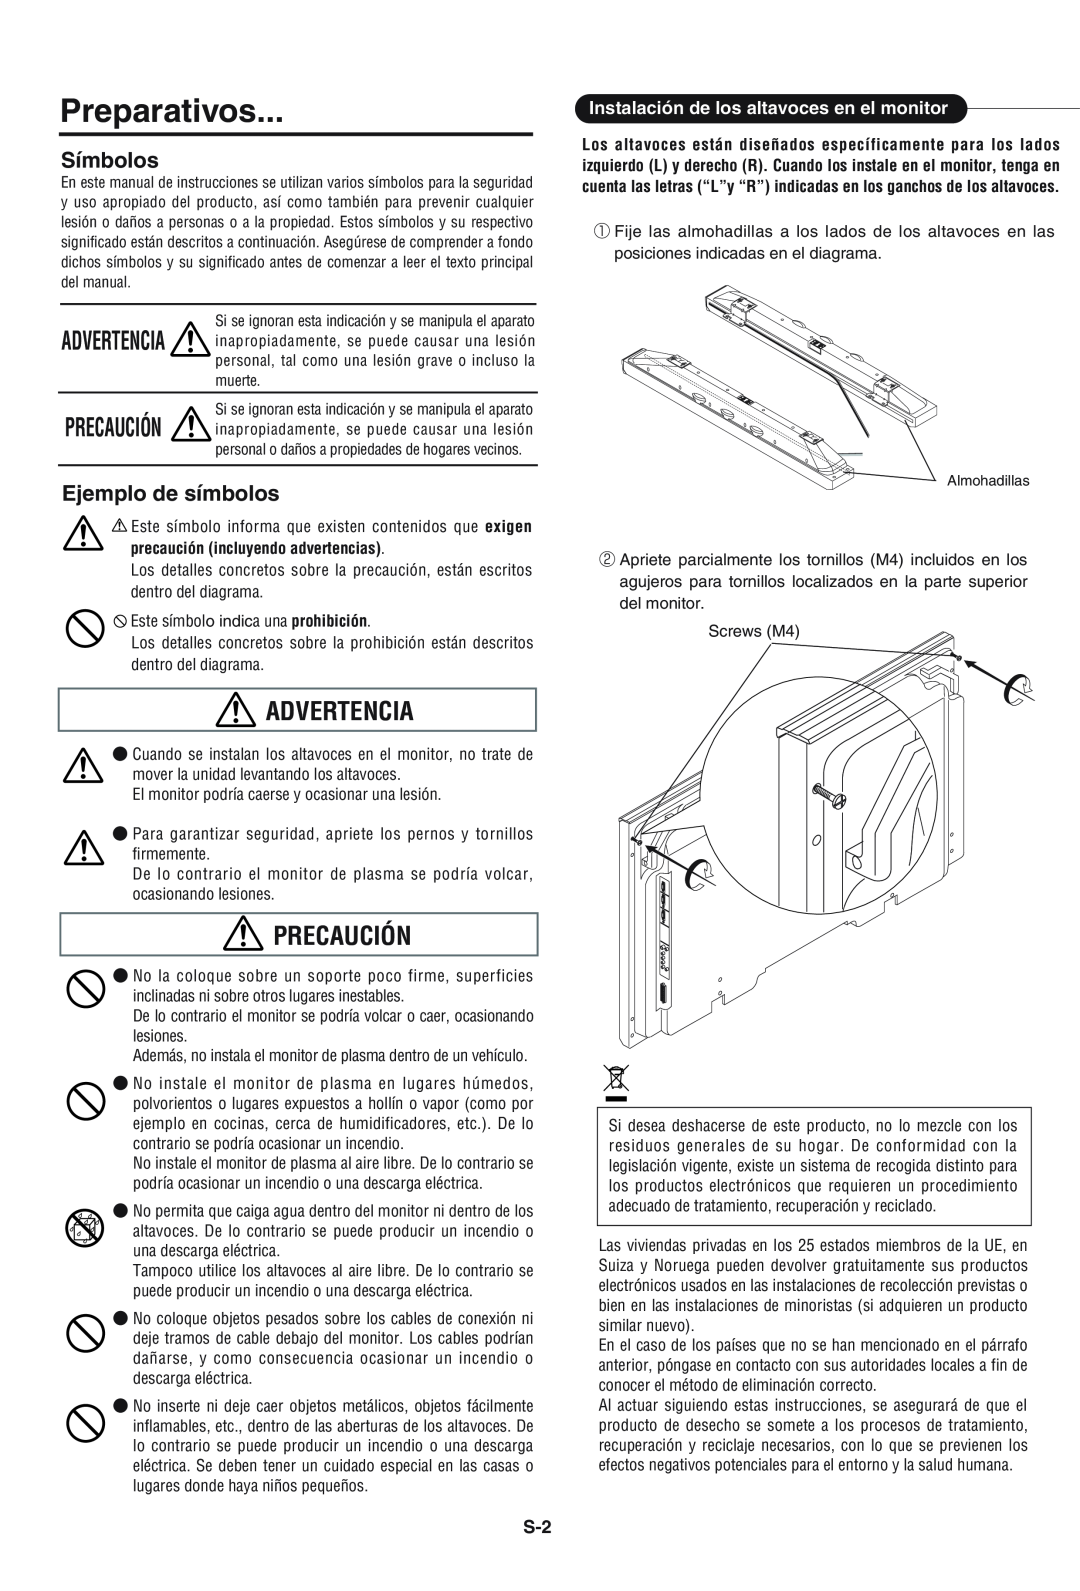 Pioneer PDP-S43-LR manual Preparativos, Advertencia, Precaución, Símbolos, Ejemplo de símbolos 